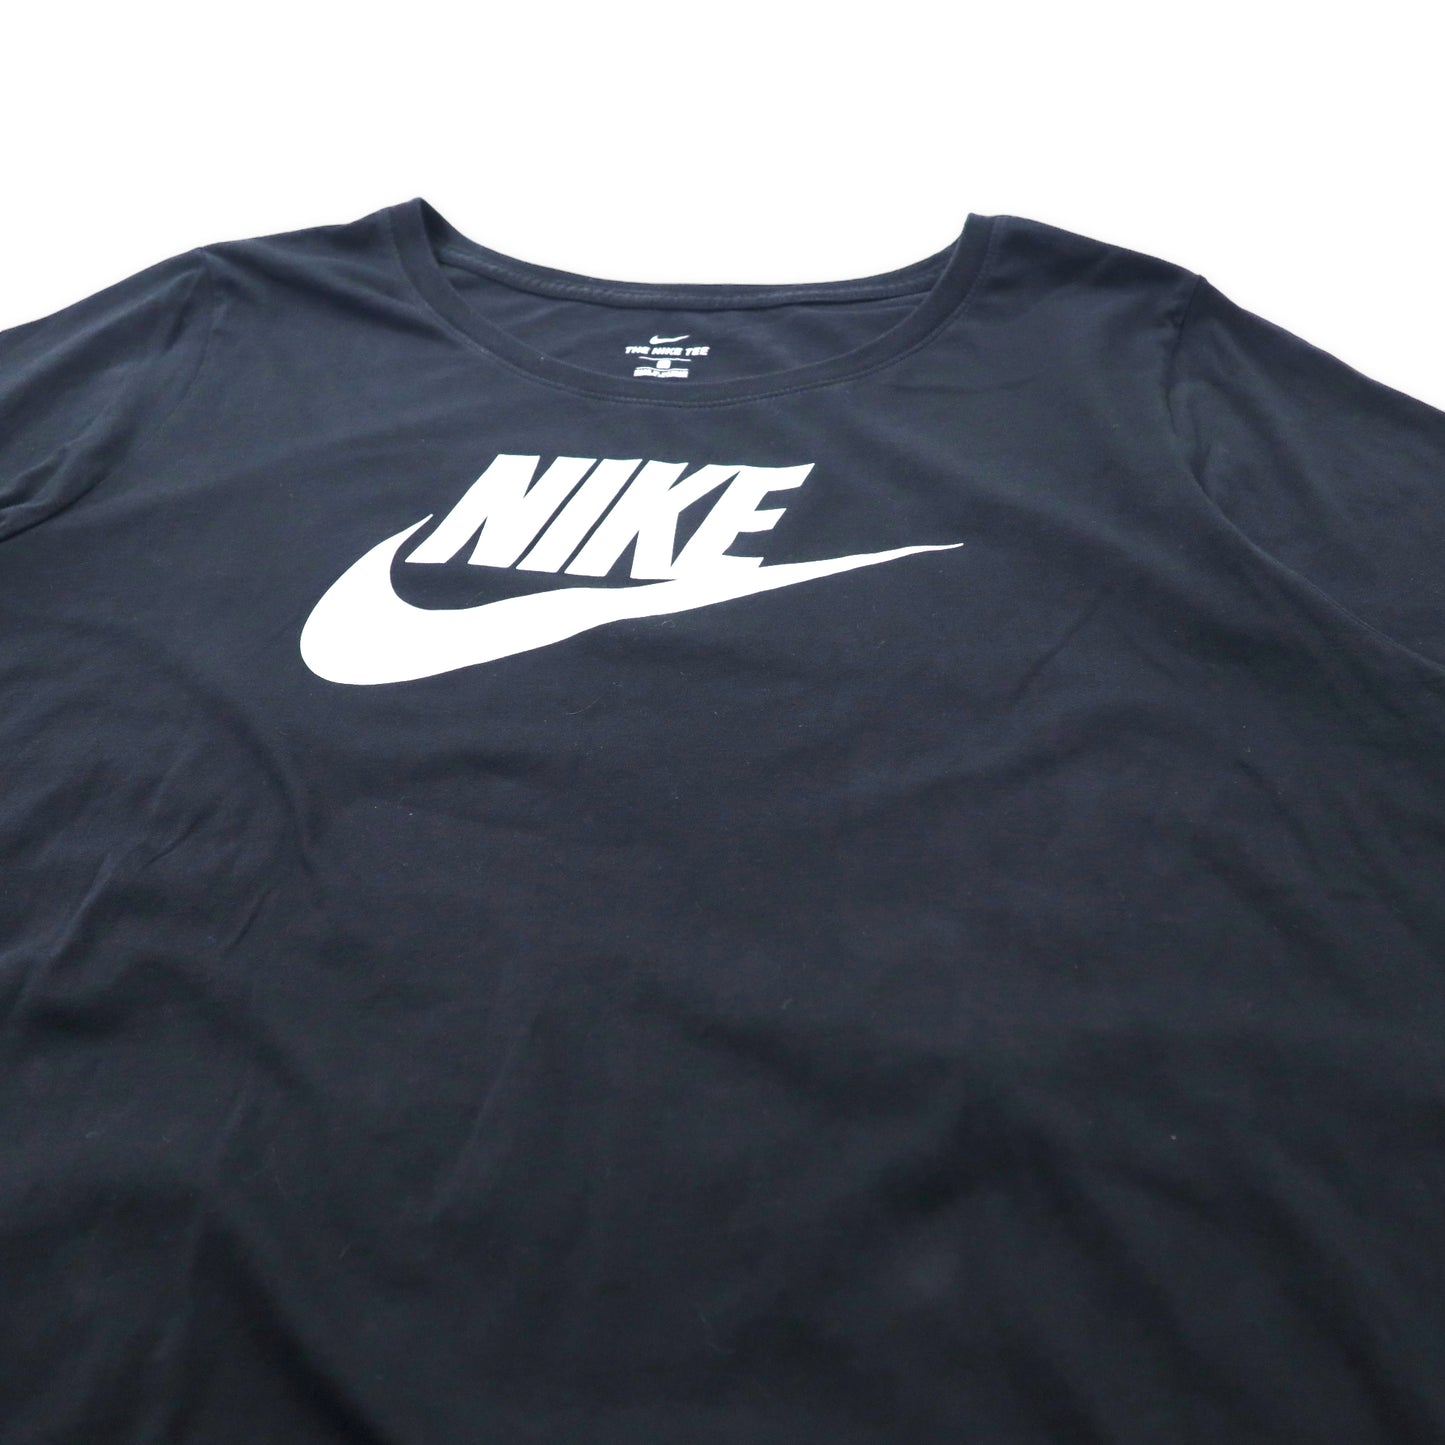 NIKE ビッグサイズ スウォッシュロゴ プリントTシャツ 3X ブラック コットン